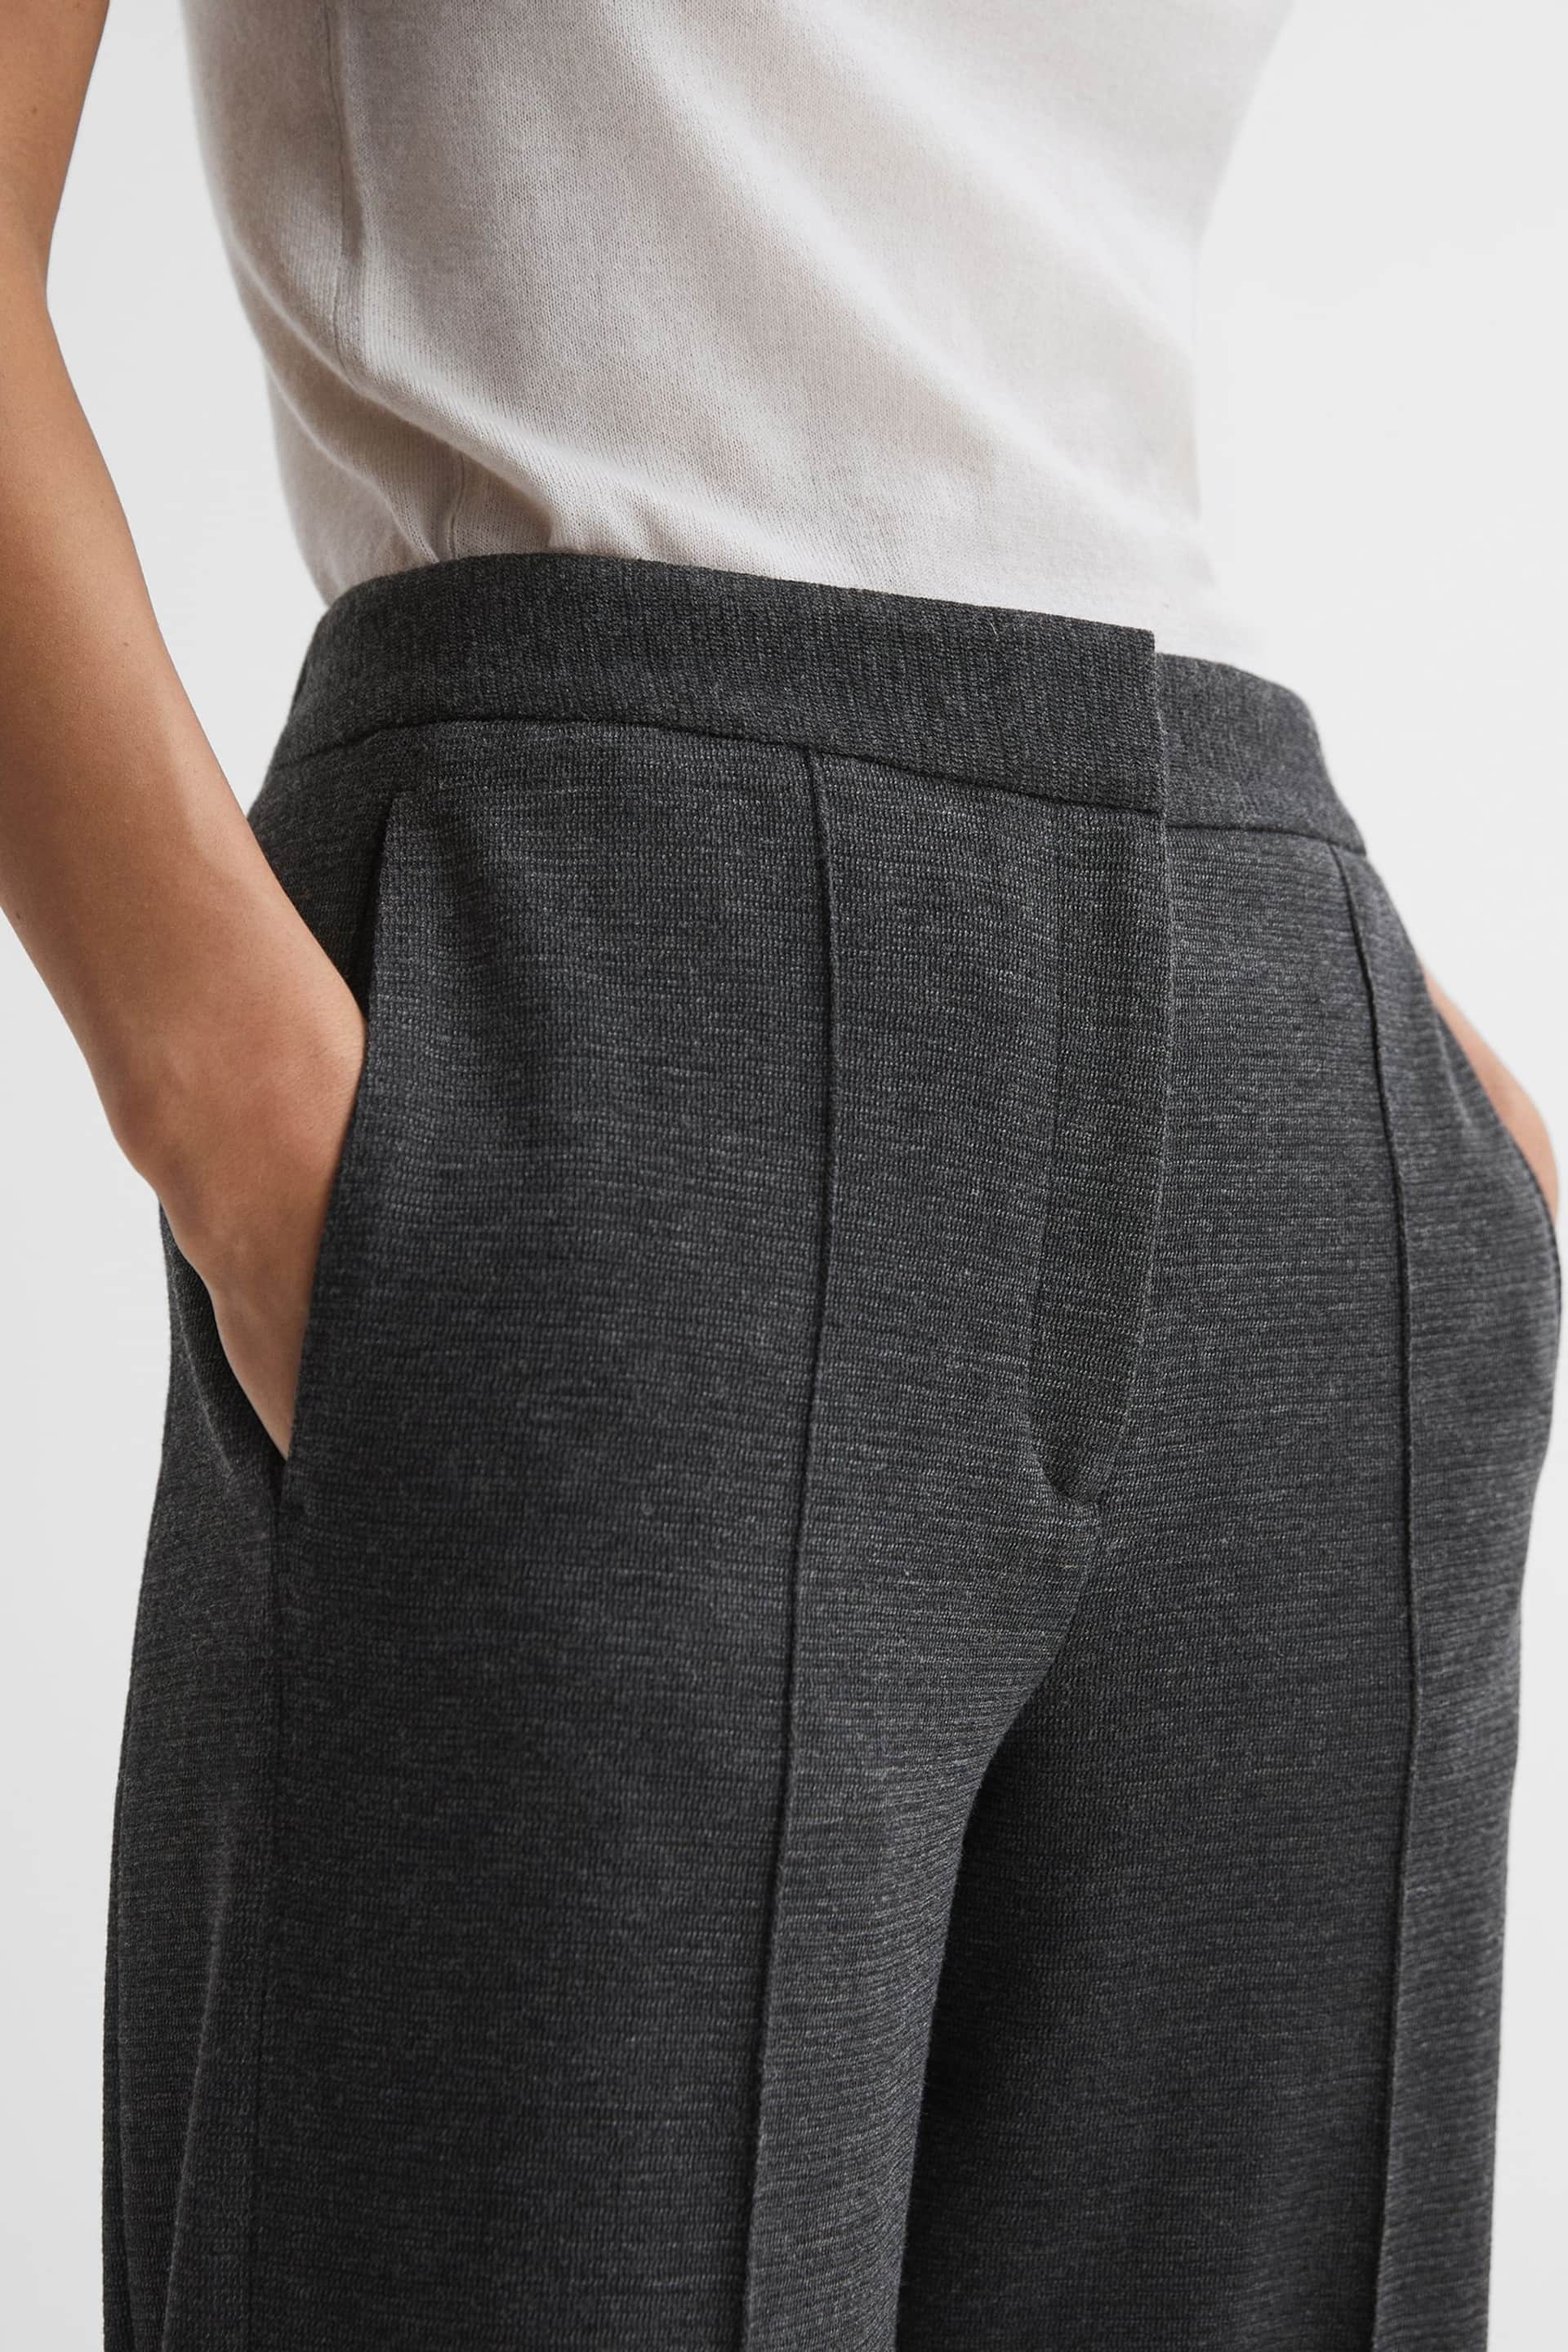 Reiss Grey Melange Iria Wool Blend Wide Leg Suit Trousers - Image 3 of 4